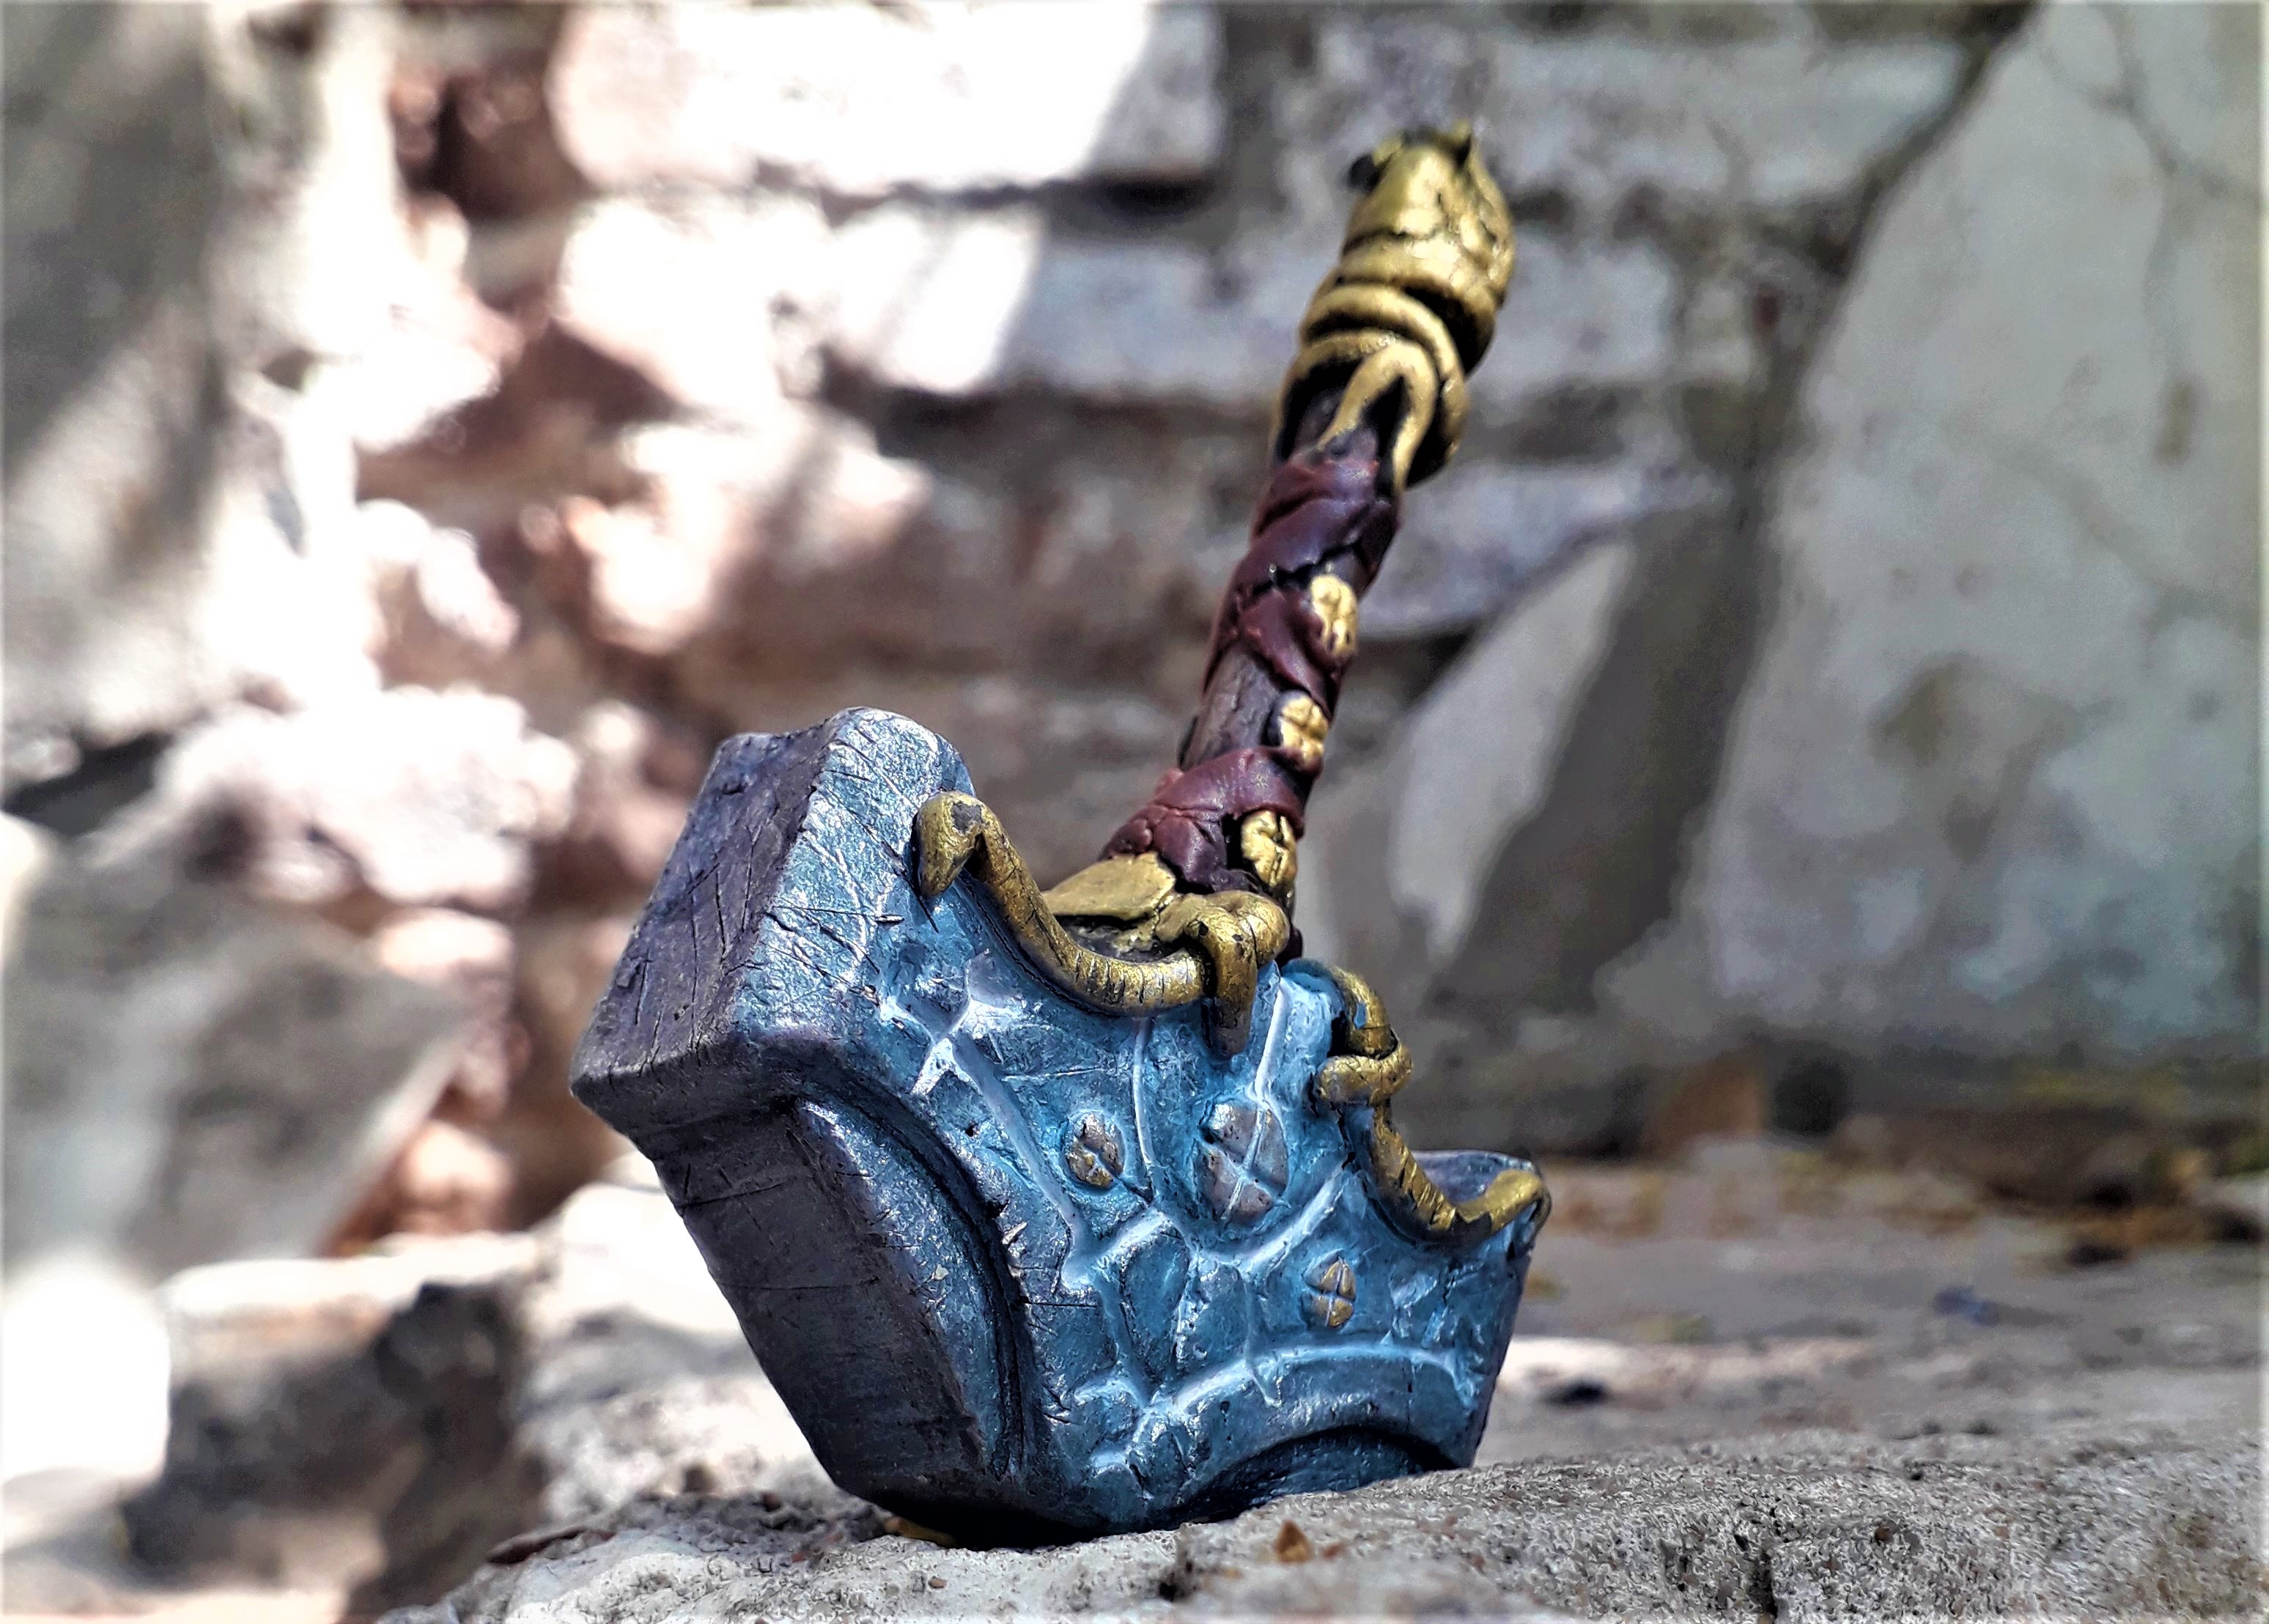 Mjolnir - God of War Ragnarok